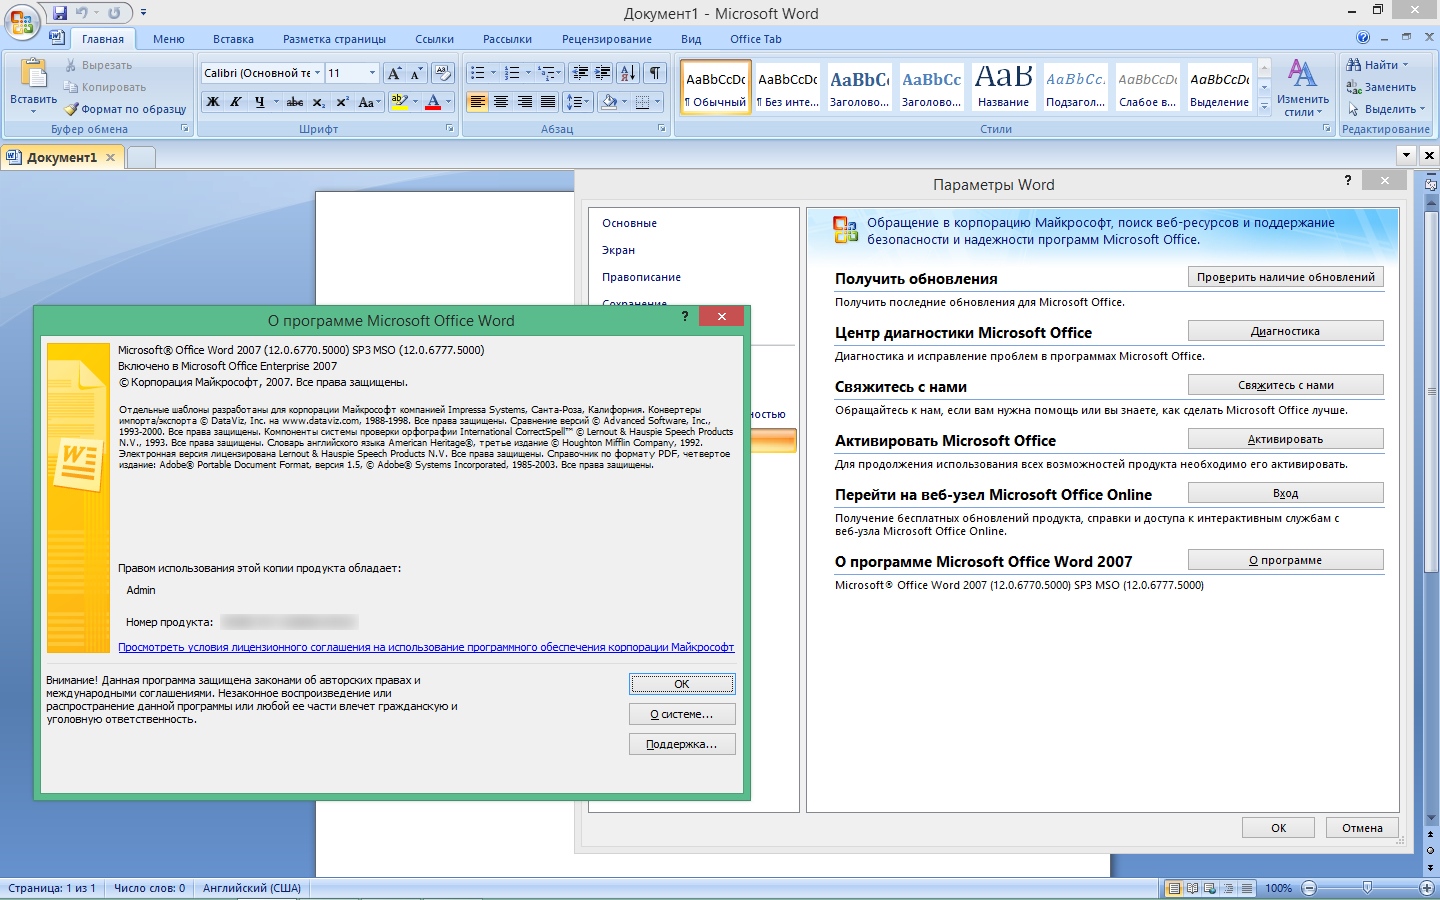 Microsoft Office 2007 Enterprise Скачать для Windows